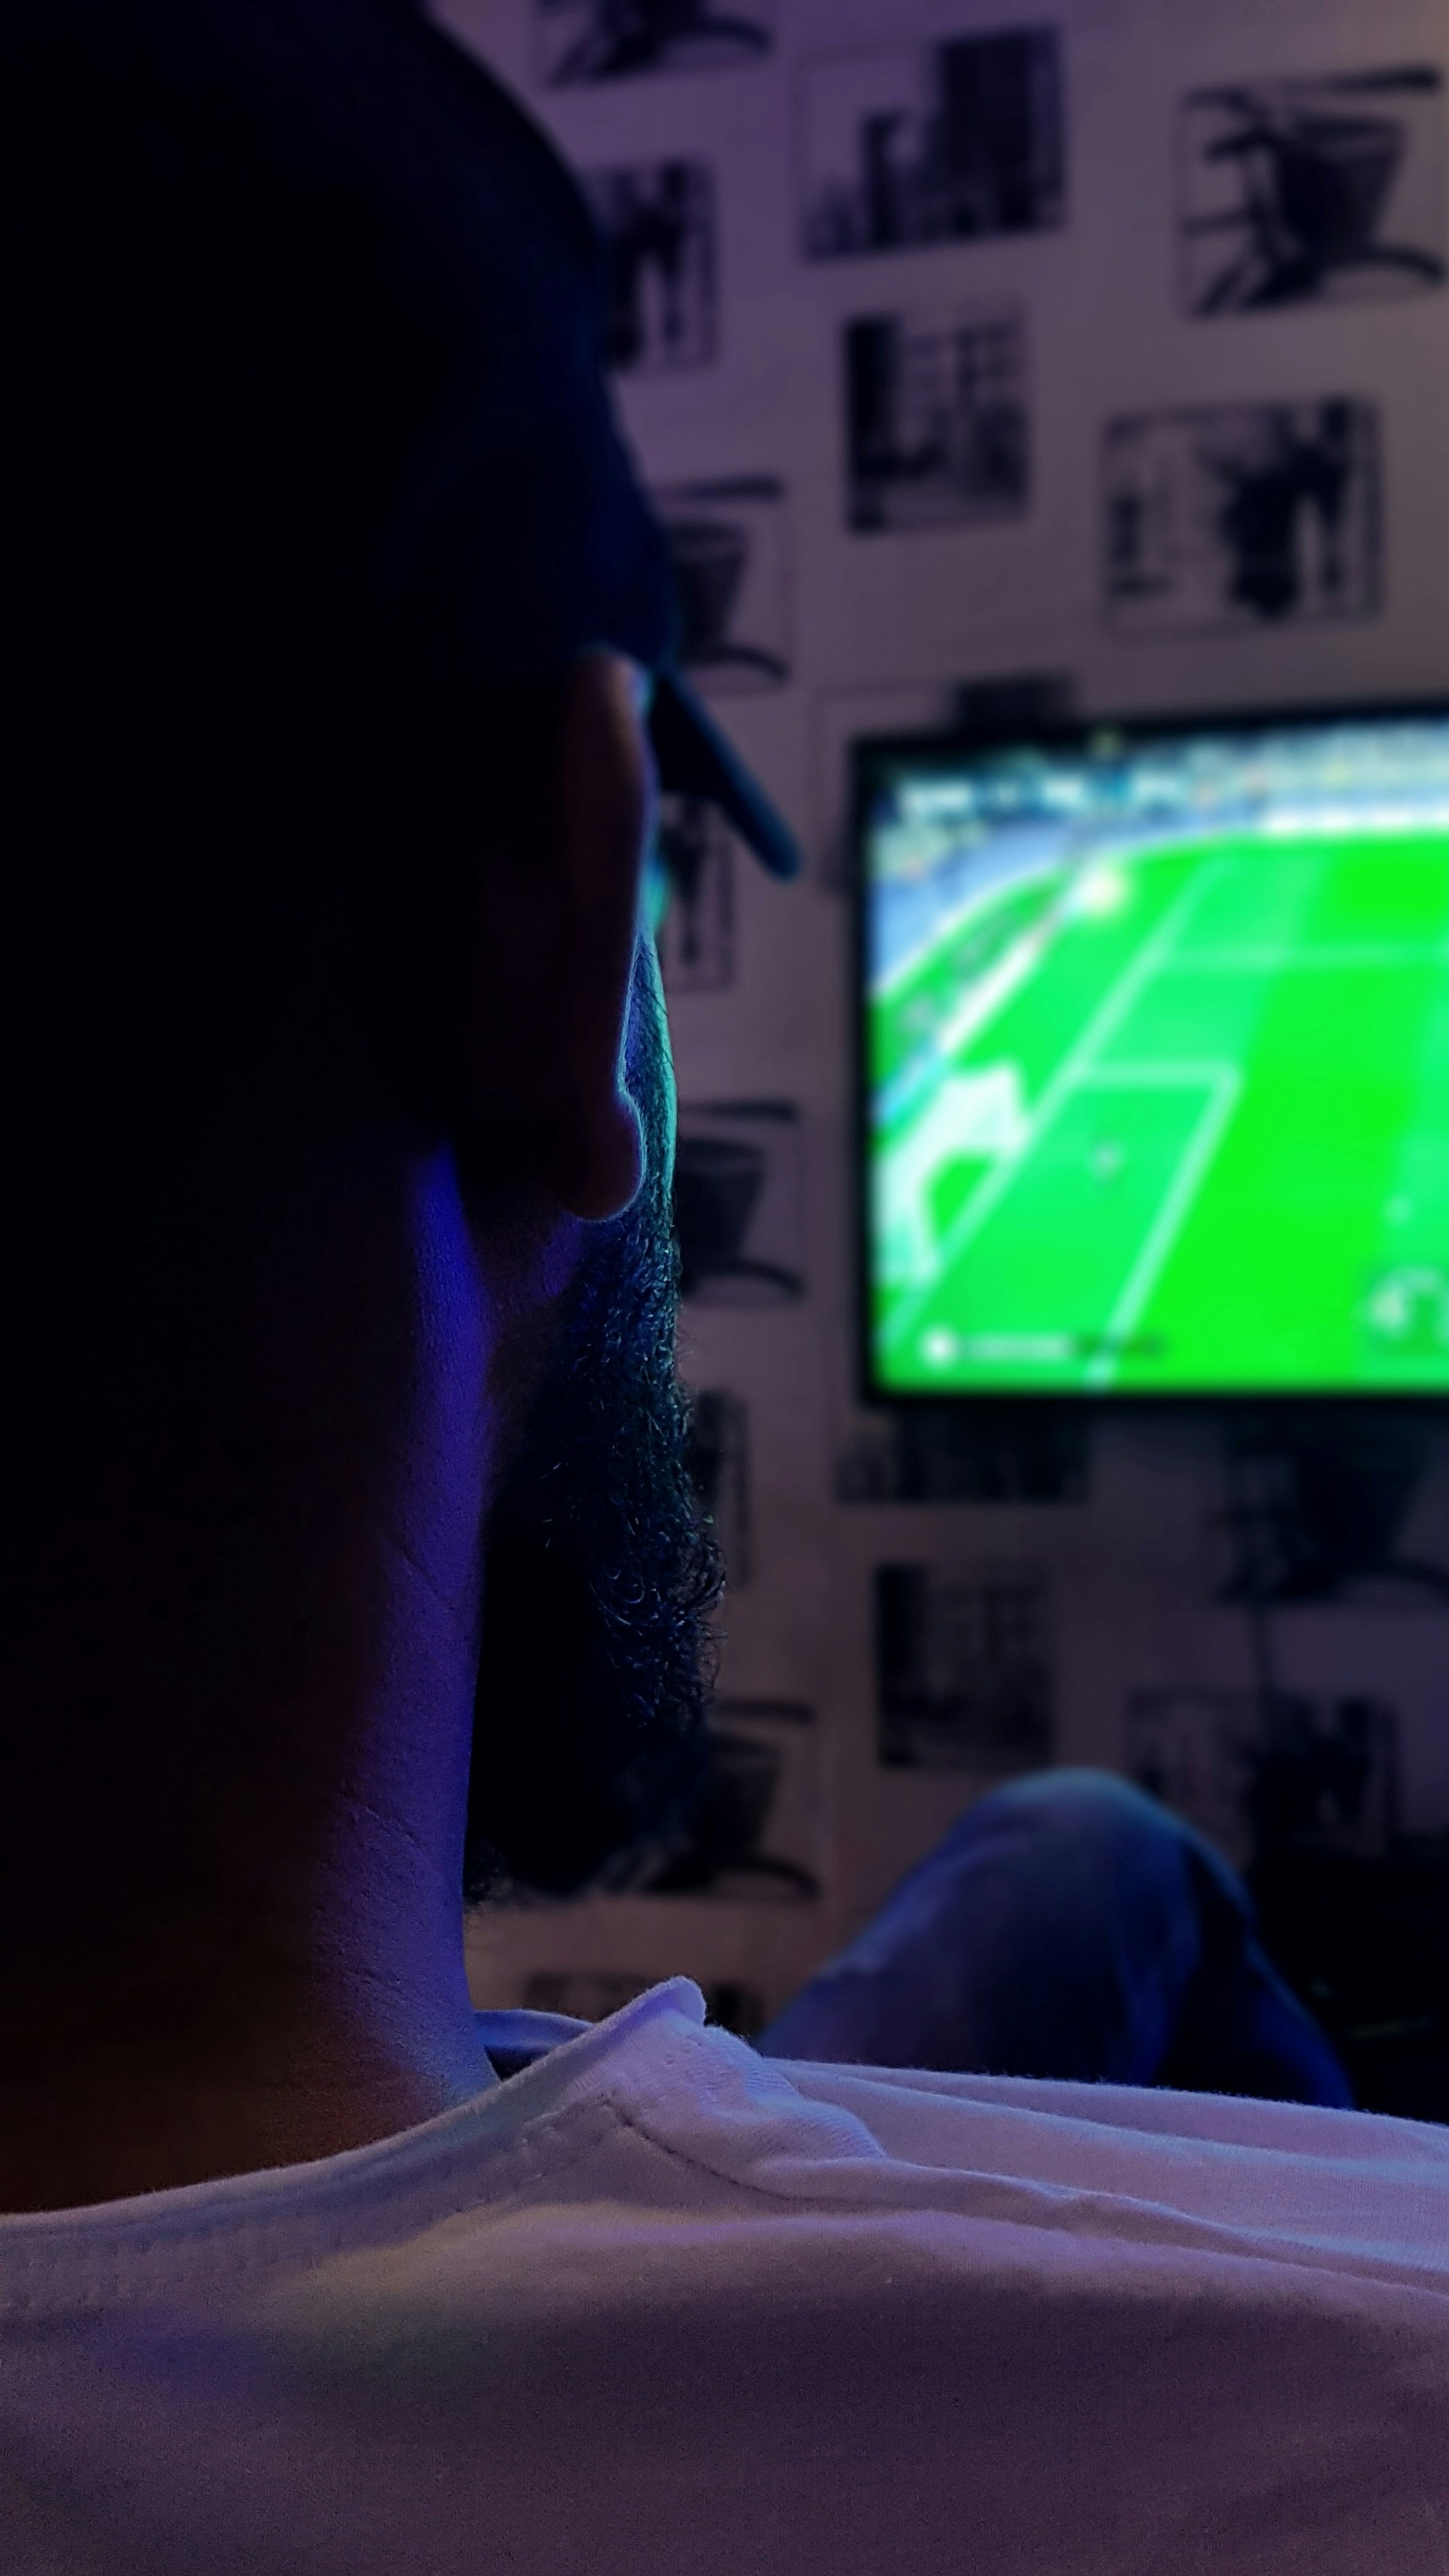 Mann schaut Sport im Fernsehen | Quelle: Unsplash